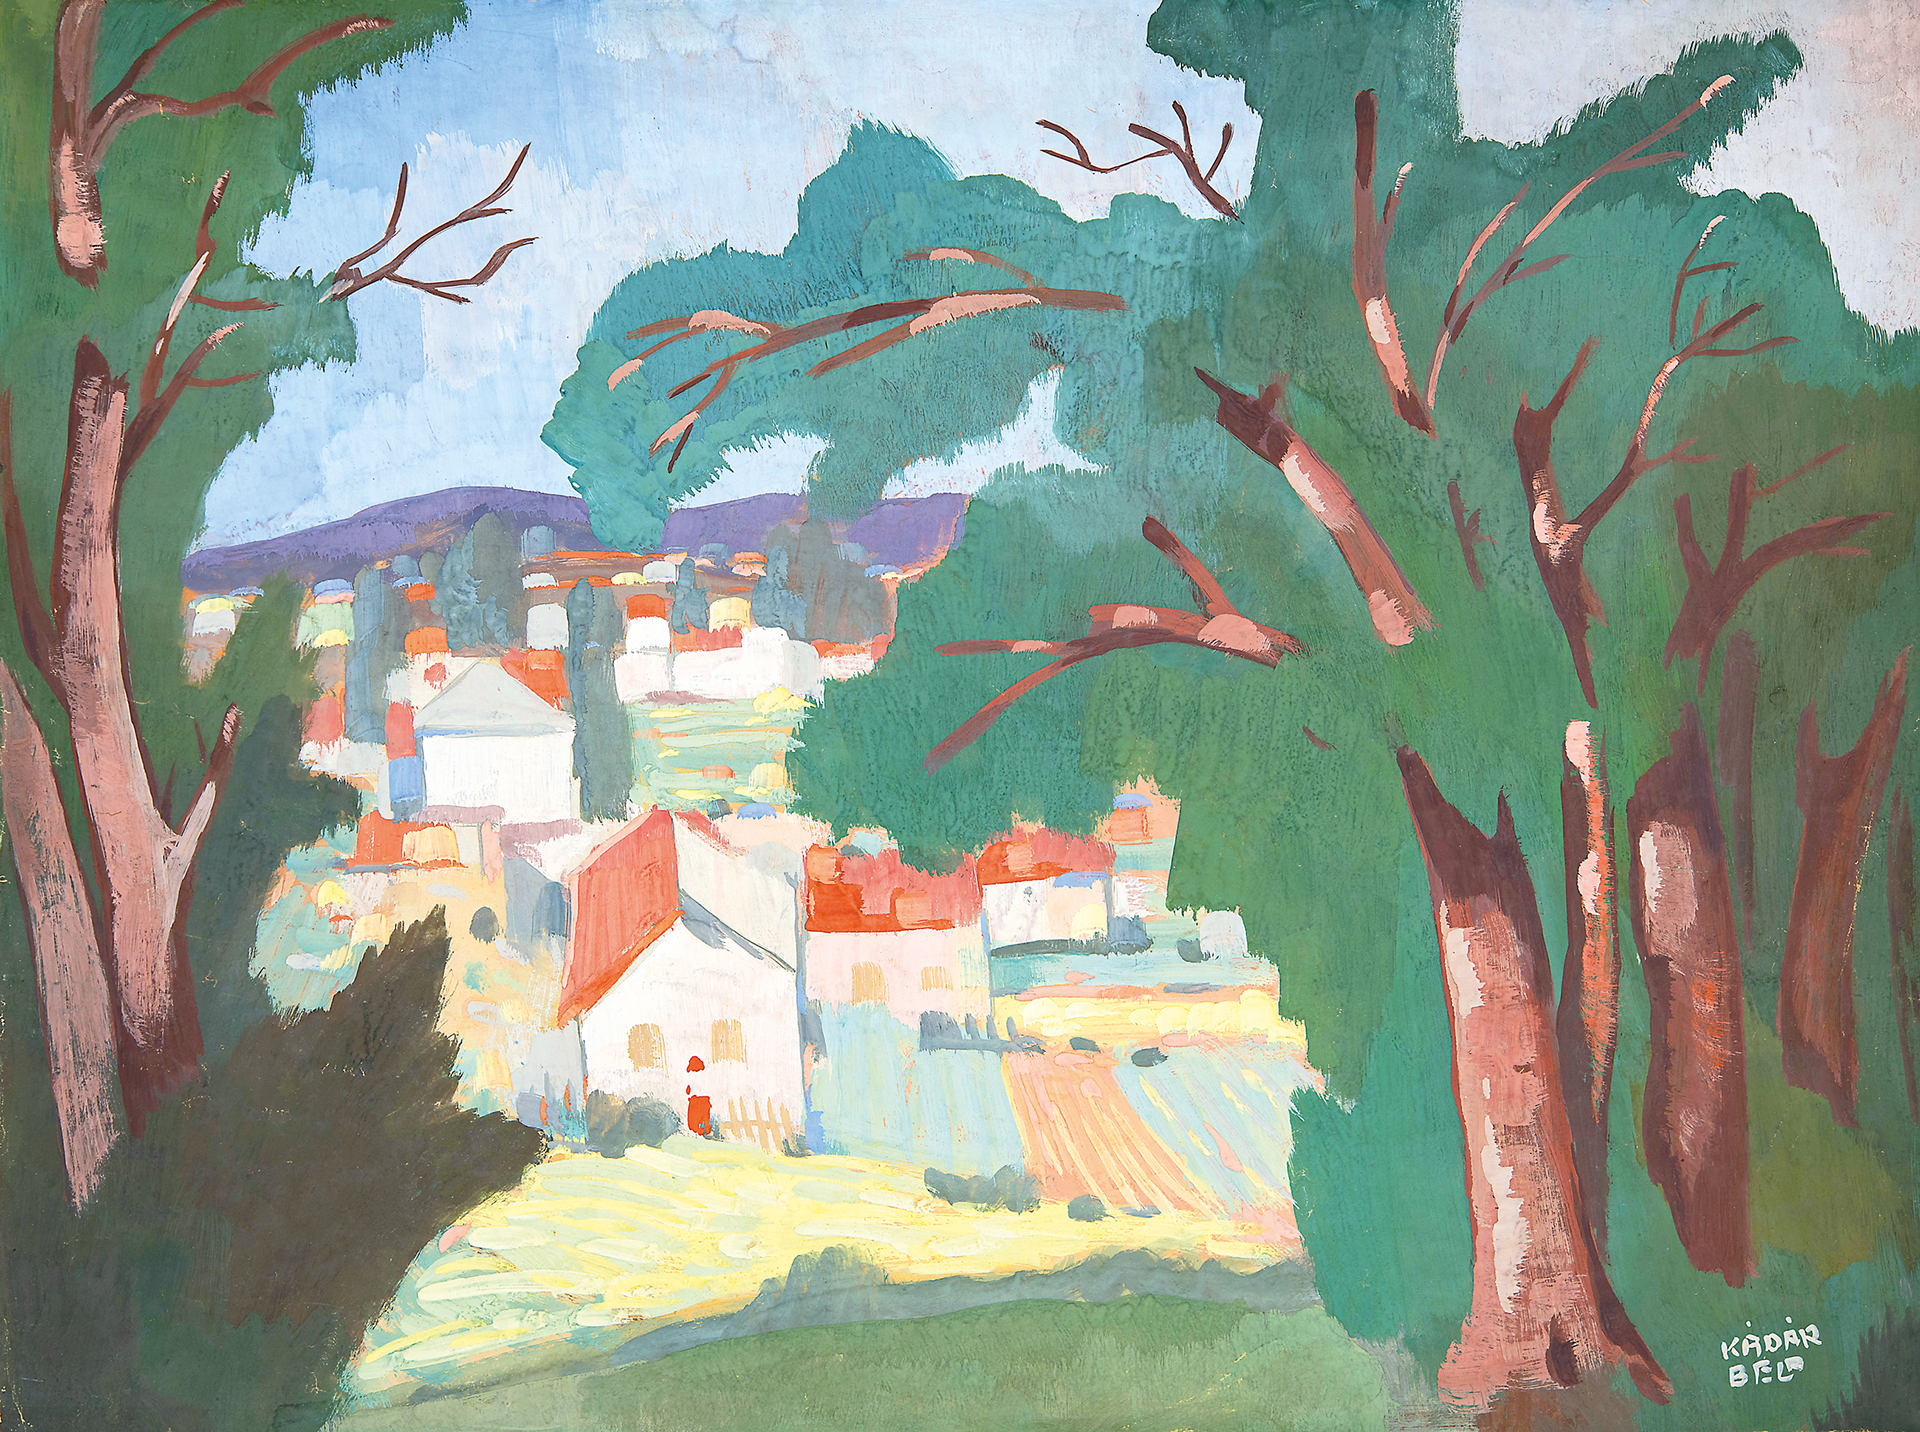 Kádár Béla (1877-1956) Landscape with Houses, around 1910